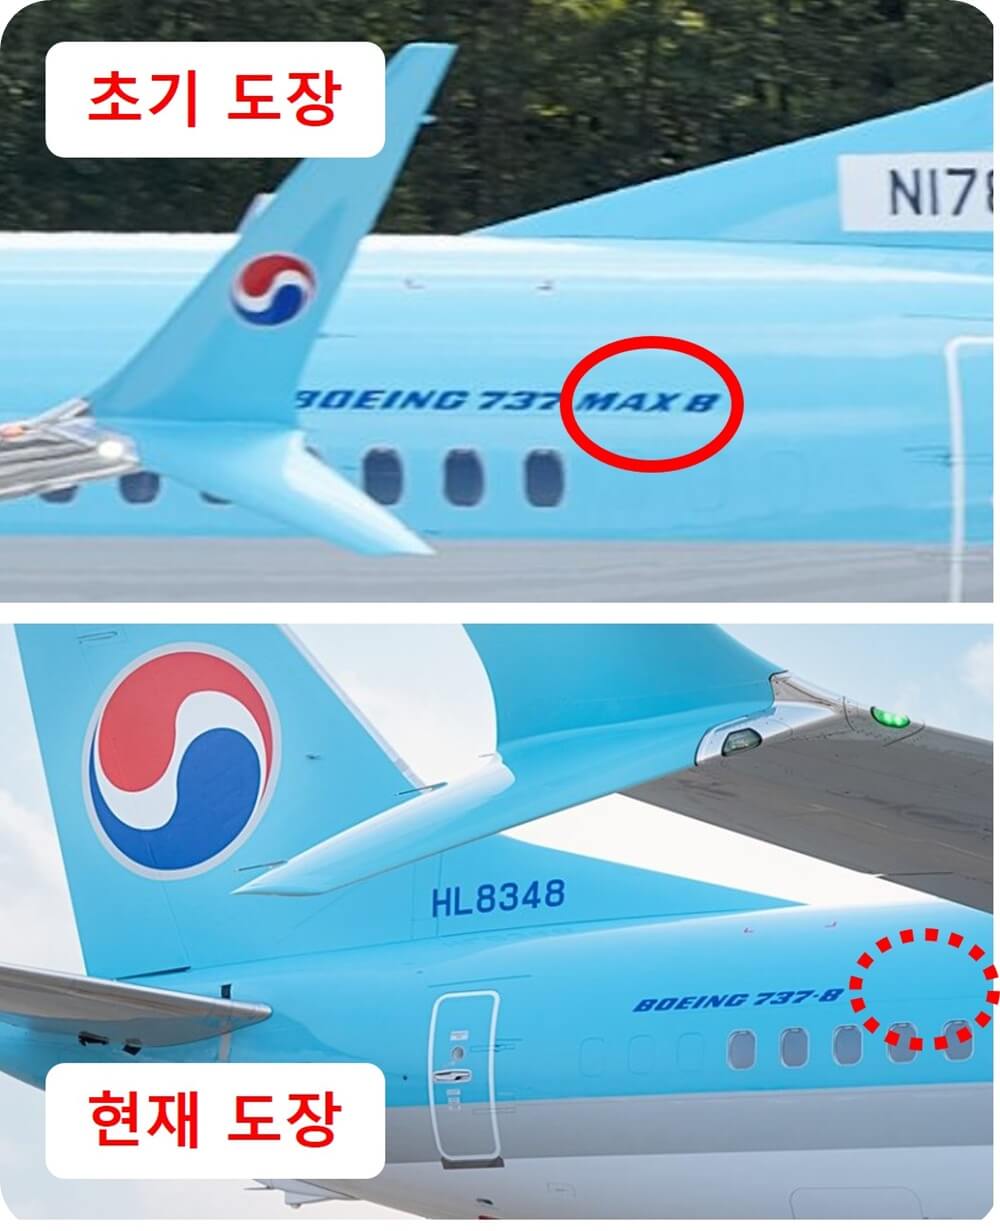 대한항공 B737 MAX 여객기에 MAX 도장 전후 비교를 보여주는 사진